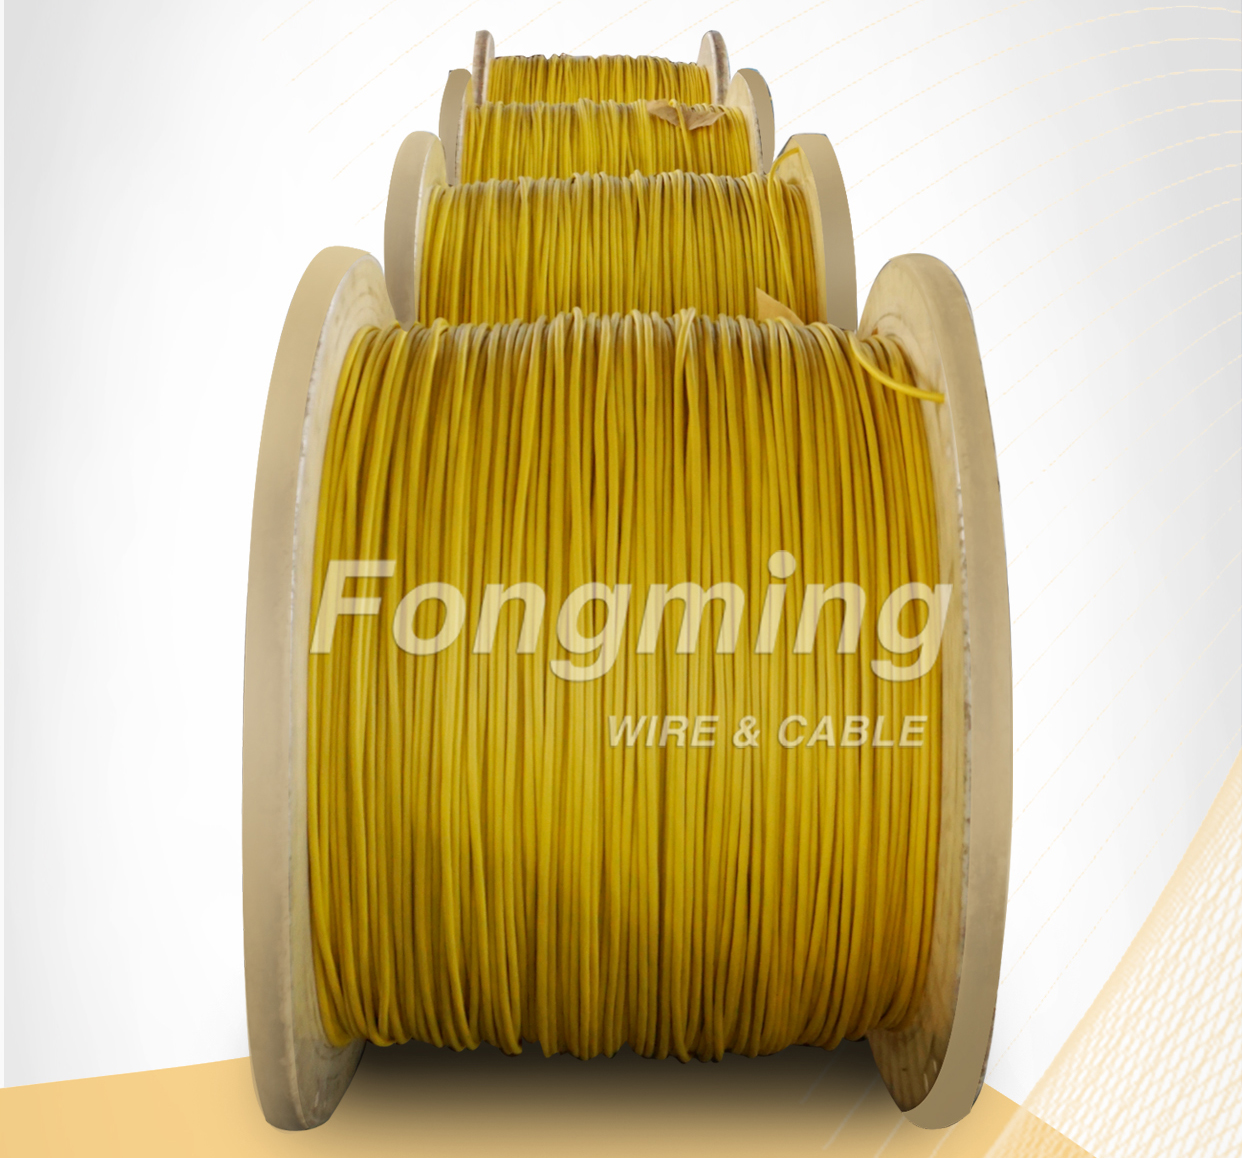 Fábrica de Cables de Fongming de Yangzhou: Características y usos de los alambres y cables resistentes al alta temperatura y ultra alta temperatura